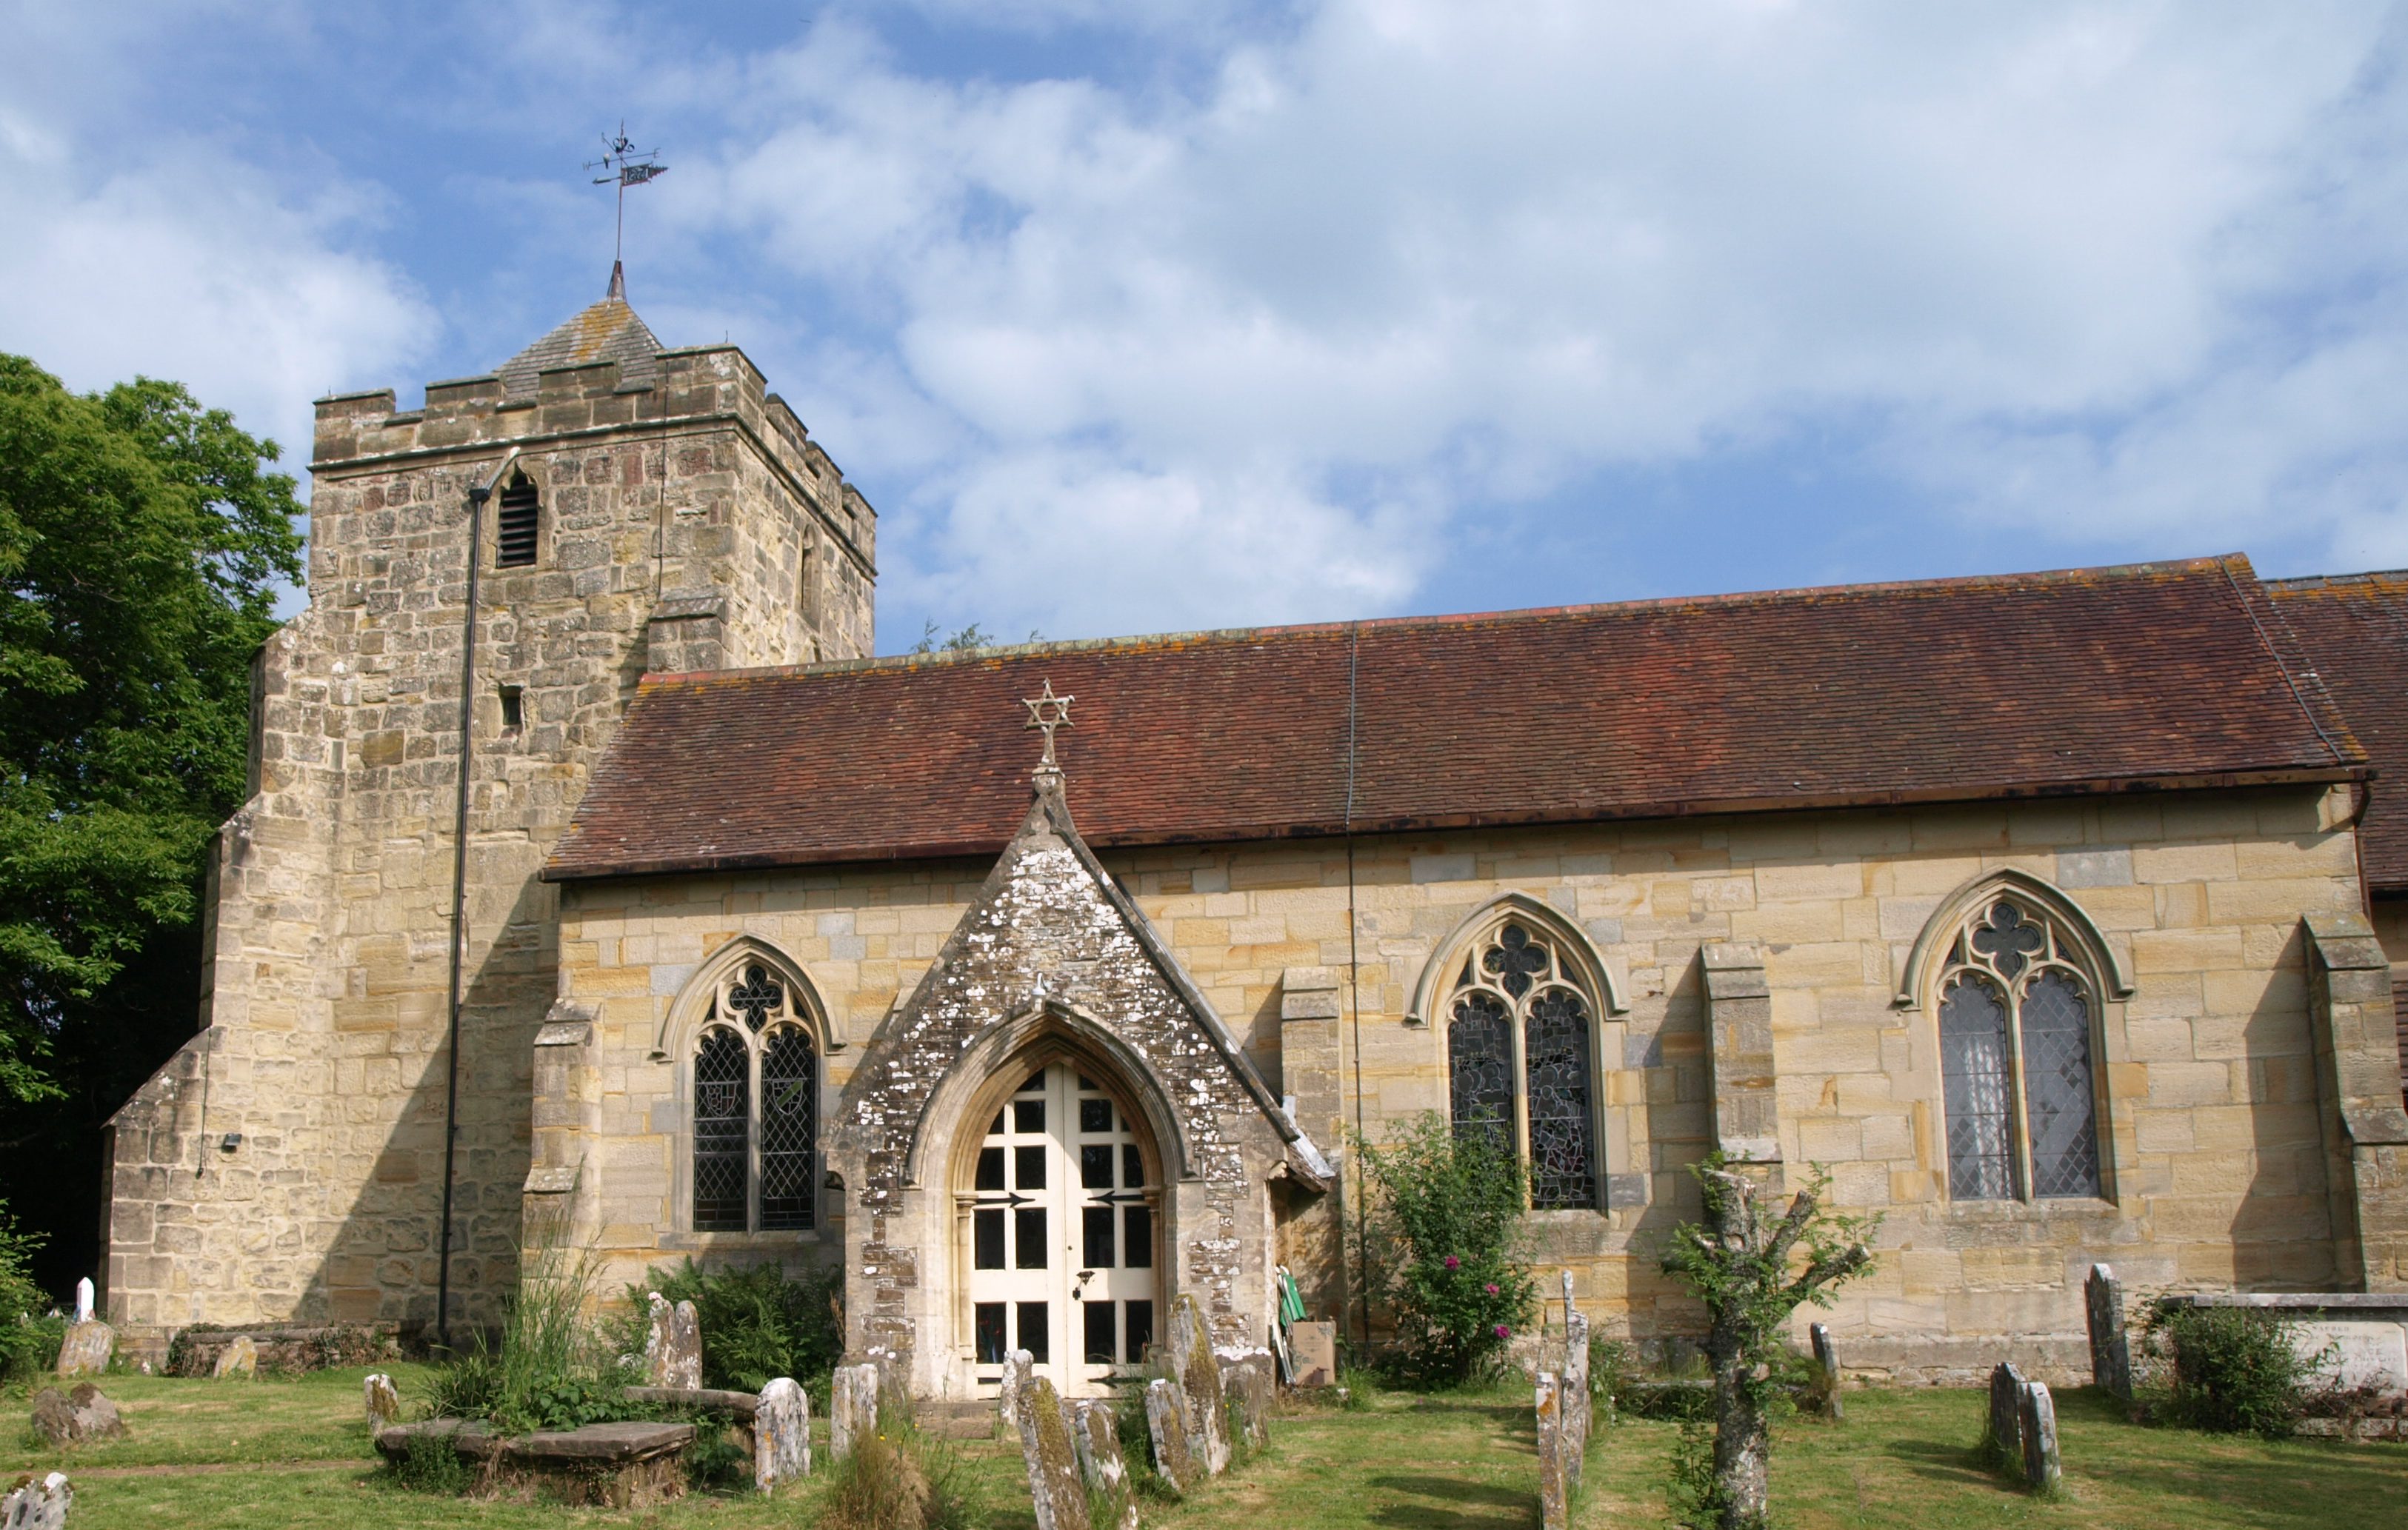 Sedlescombe Parish Church